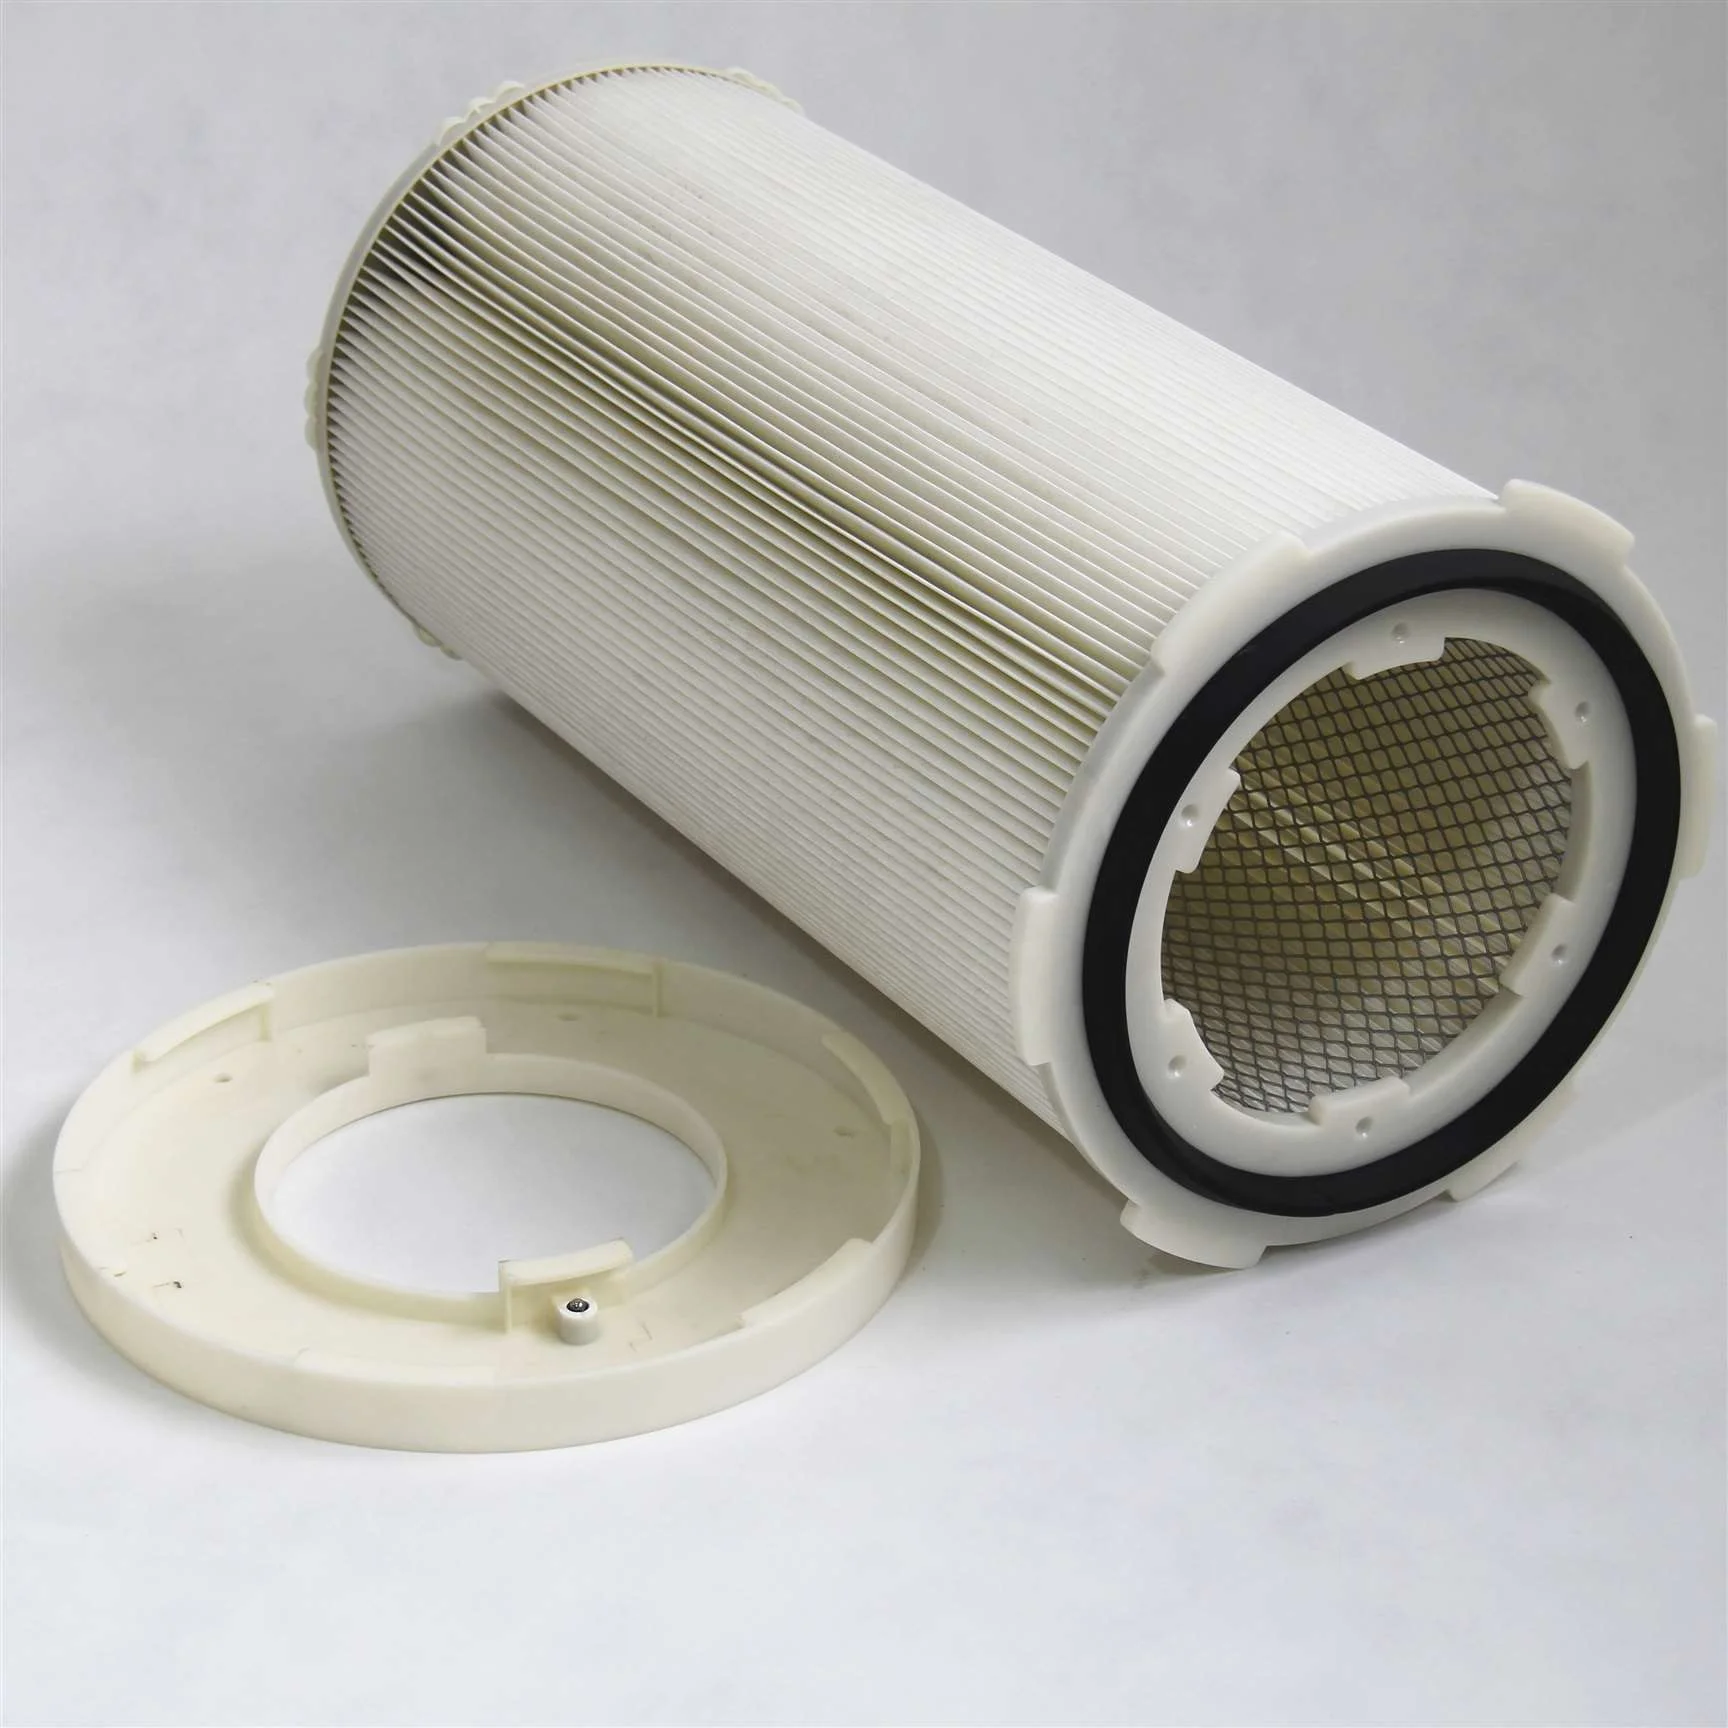 vacuum cleaner filter